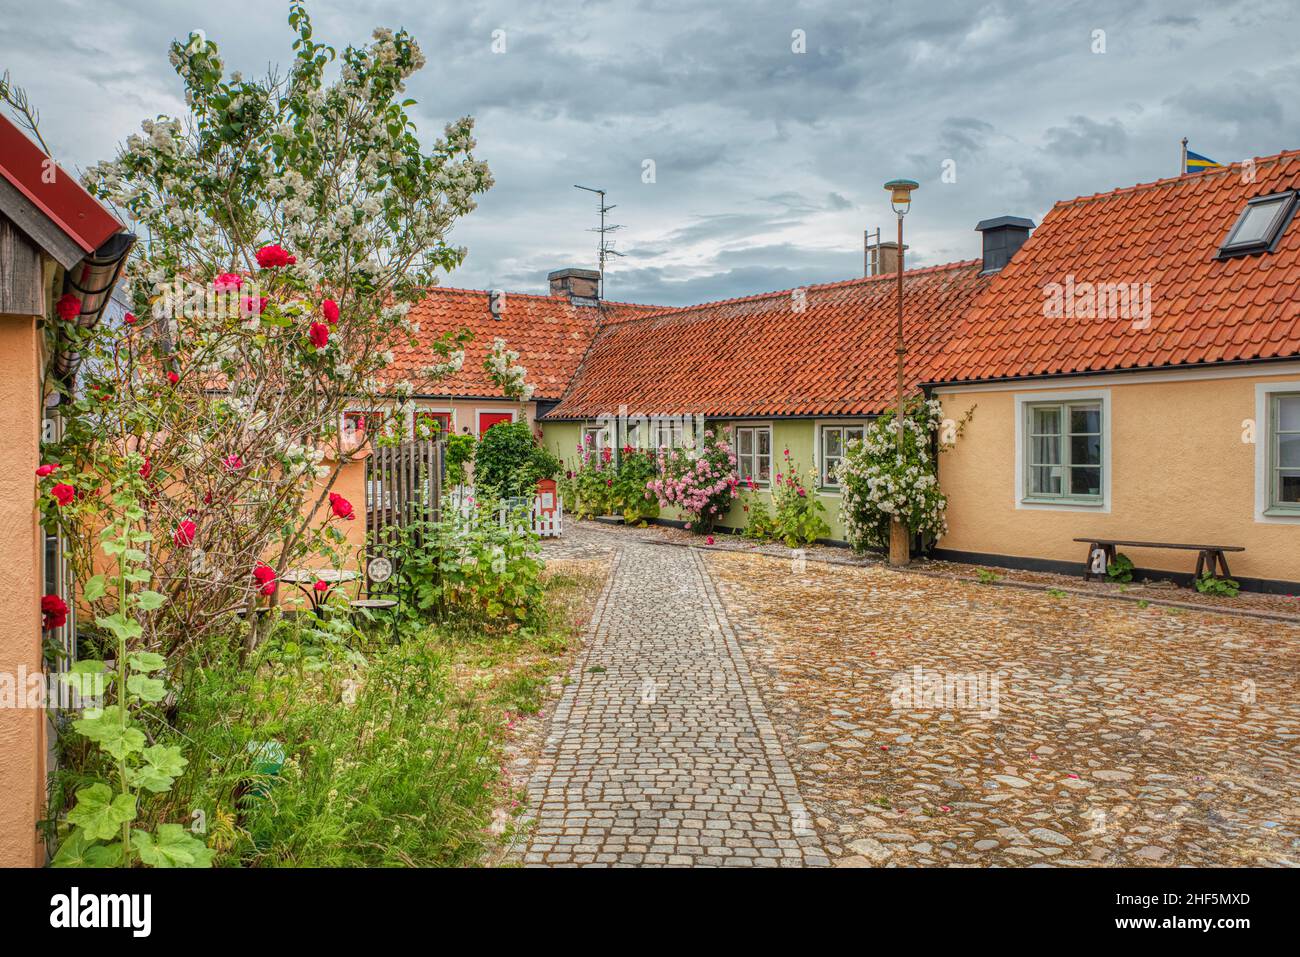 La piazza acciottolata in un piccolo villaggio turistico di pescatori nella regione di Osterlen mostra un quartiere accogliente e trasmette un senso di comunità. Svezia Foto Stock